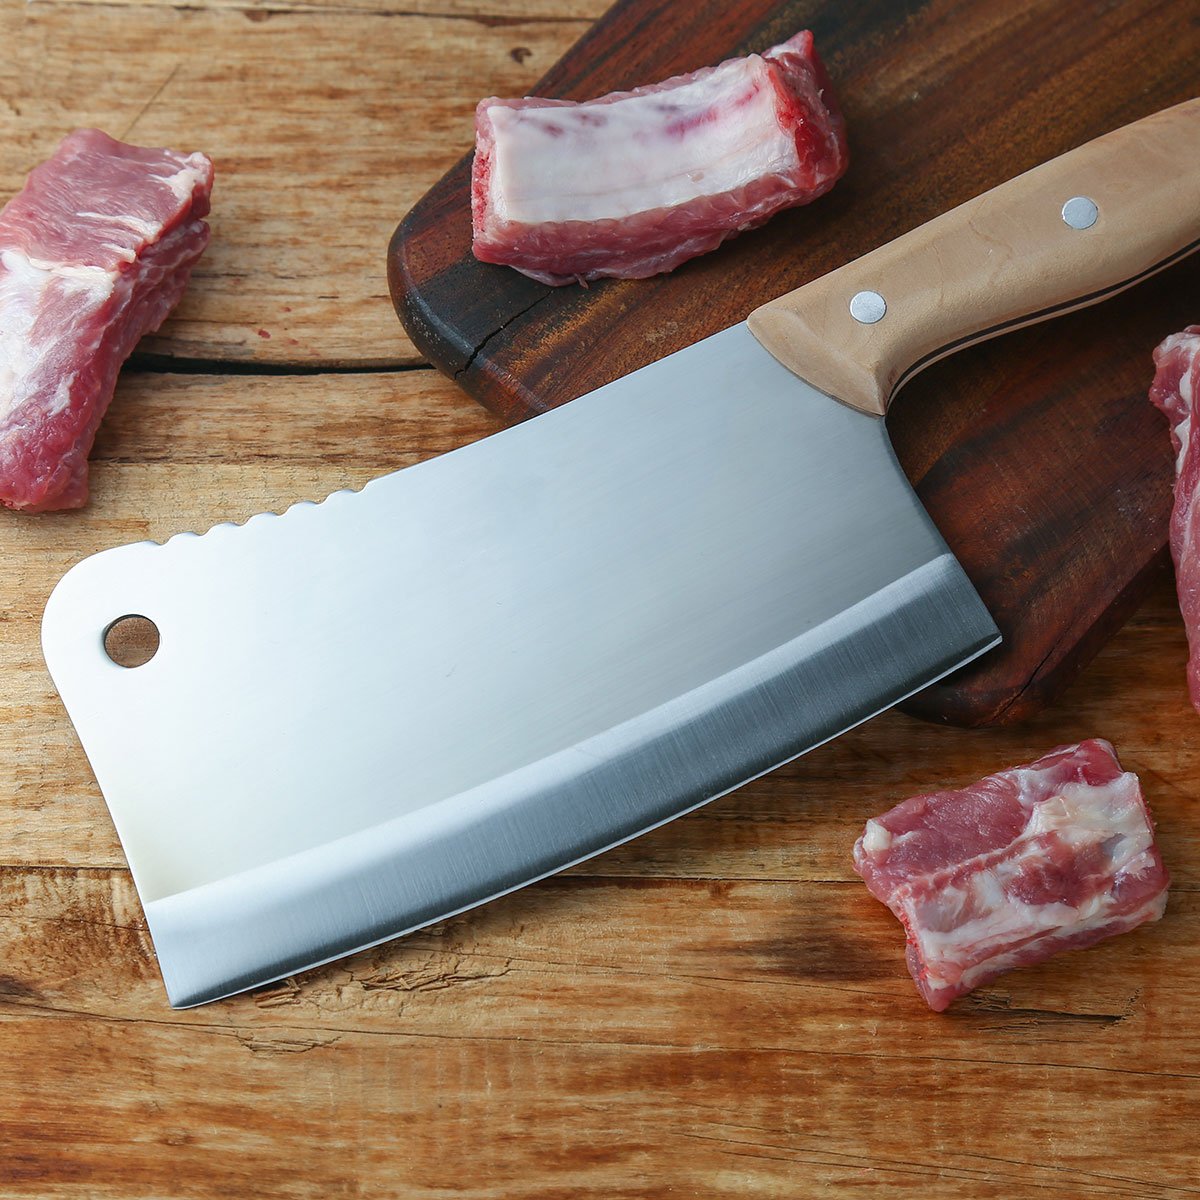 13 jenis pisau dapur beserta fungsinya cleaver knife